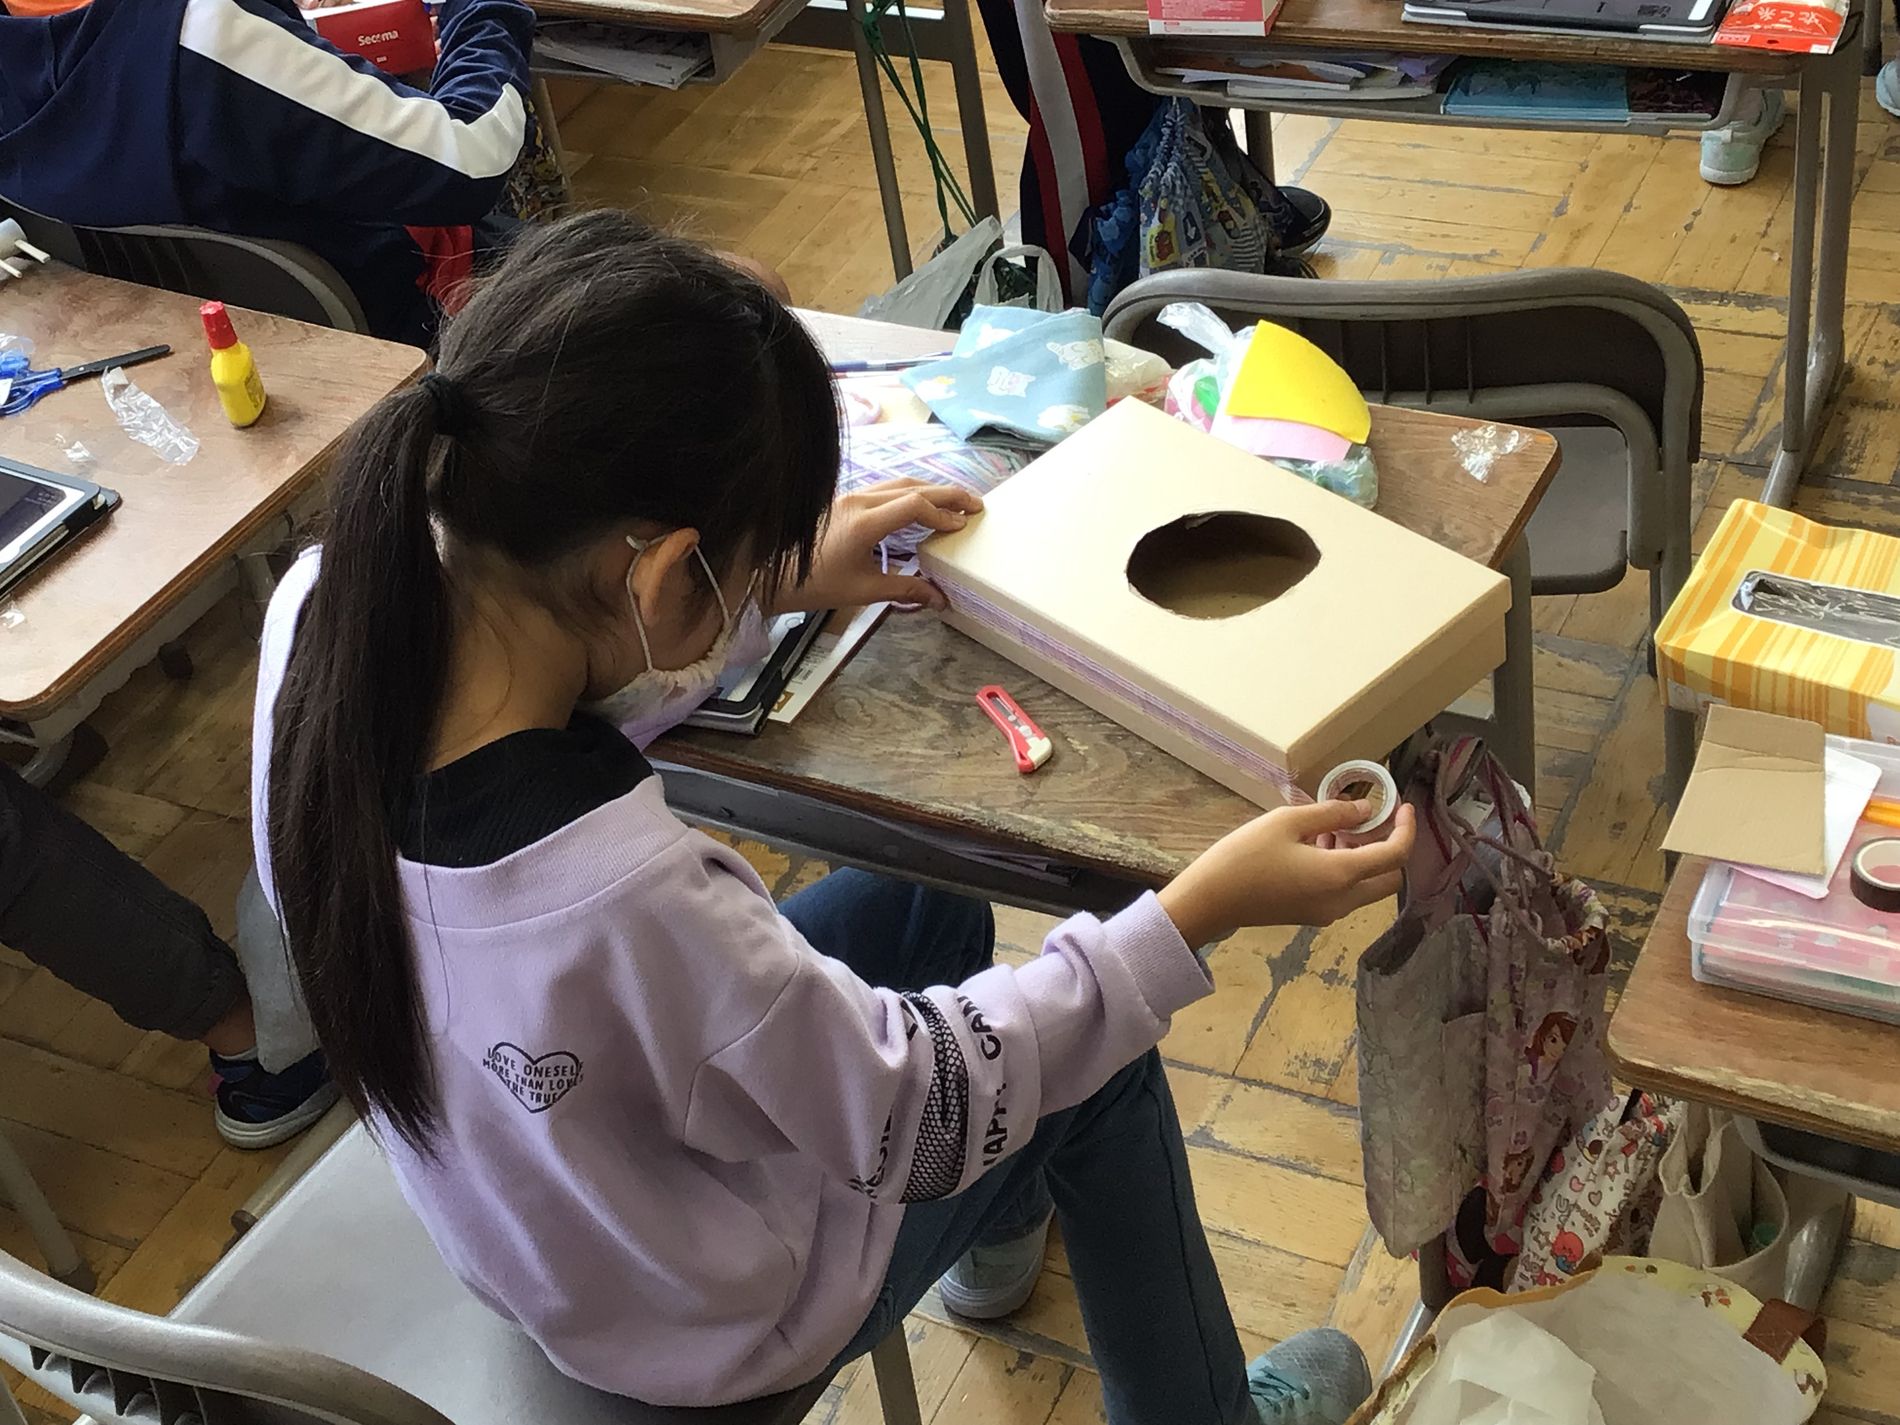 教室の机に向かい、箱型の段ボールに穴を開けたりテープを貼って加工している女の子の写真